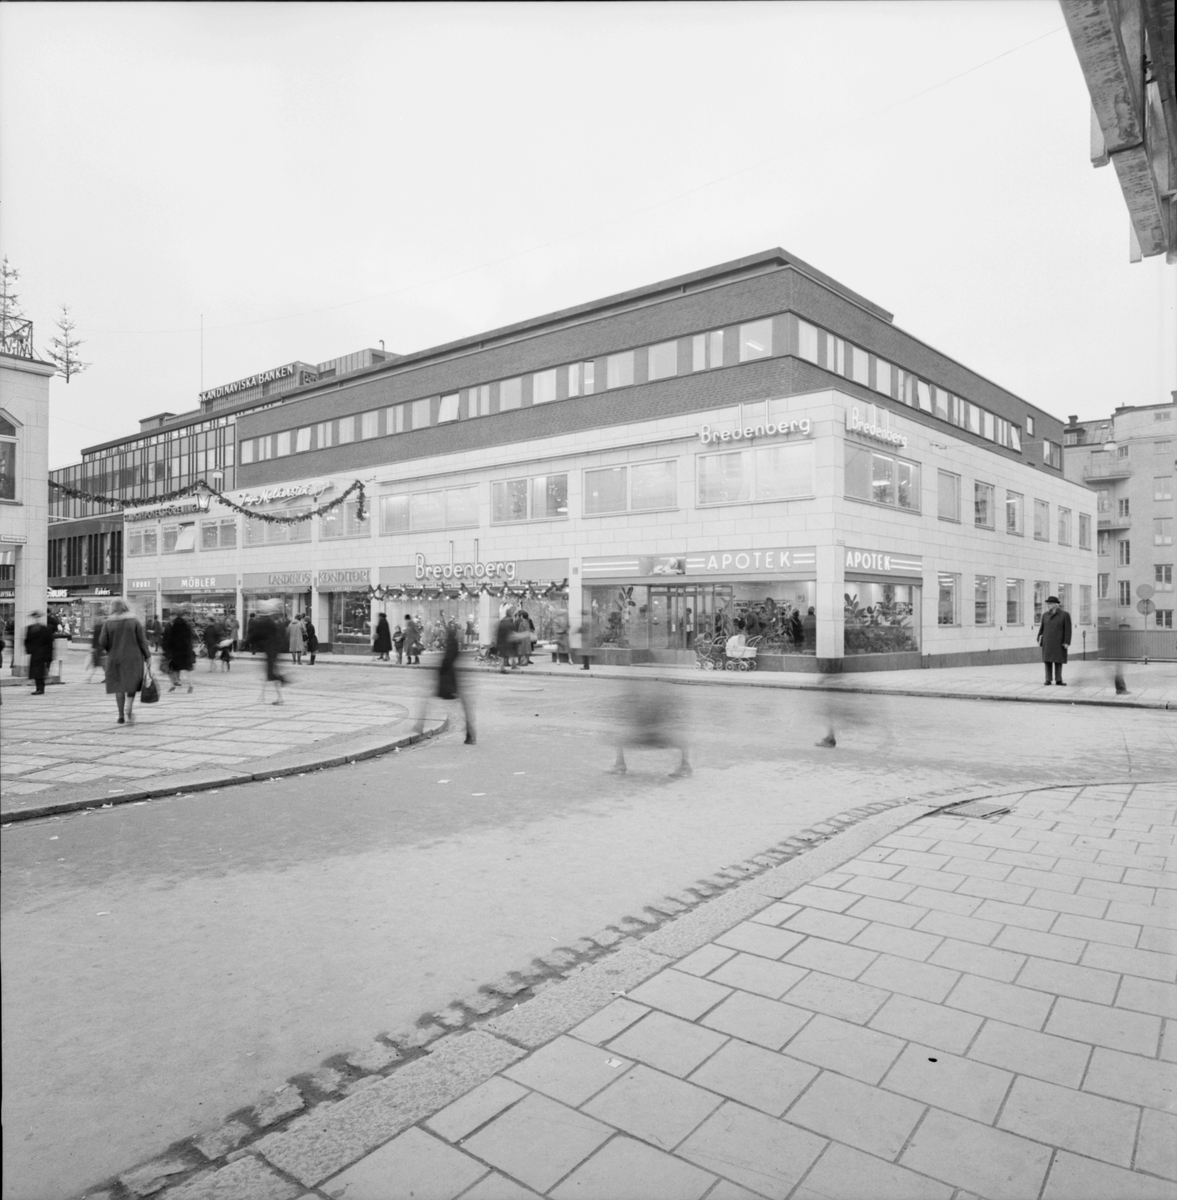 Landings konditori, Bredenberg och Apoteket Lejonet, Kungsängsgatan, kvarteret Duvan, Uppsala 1963